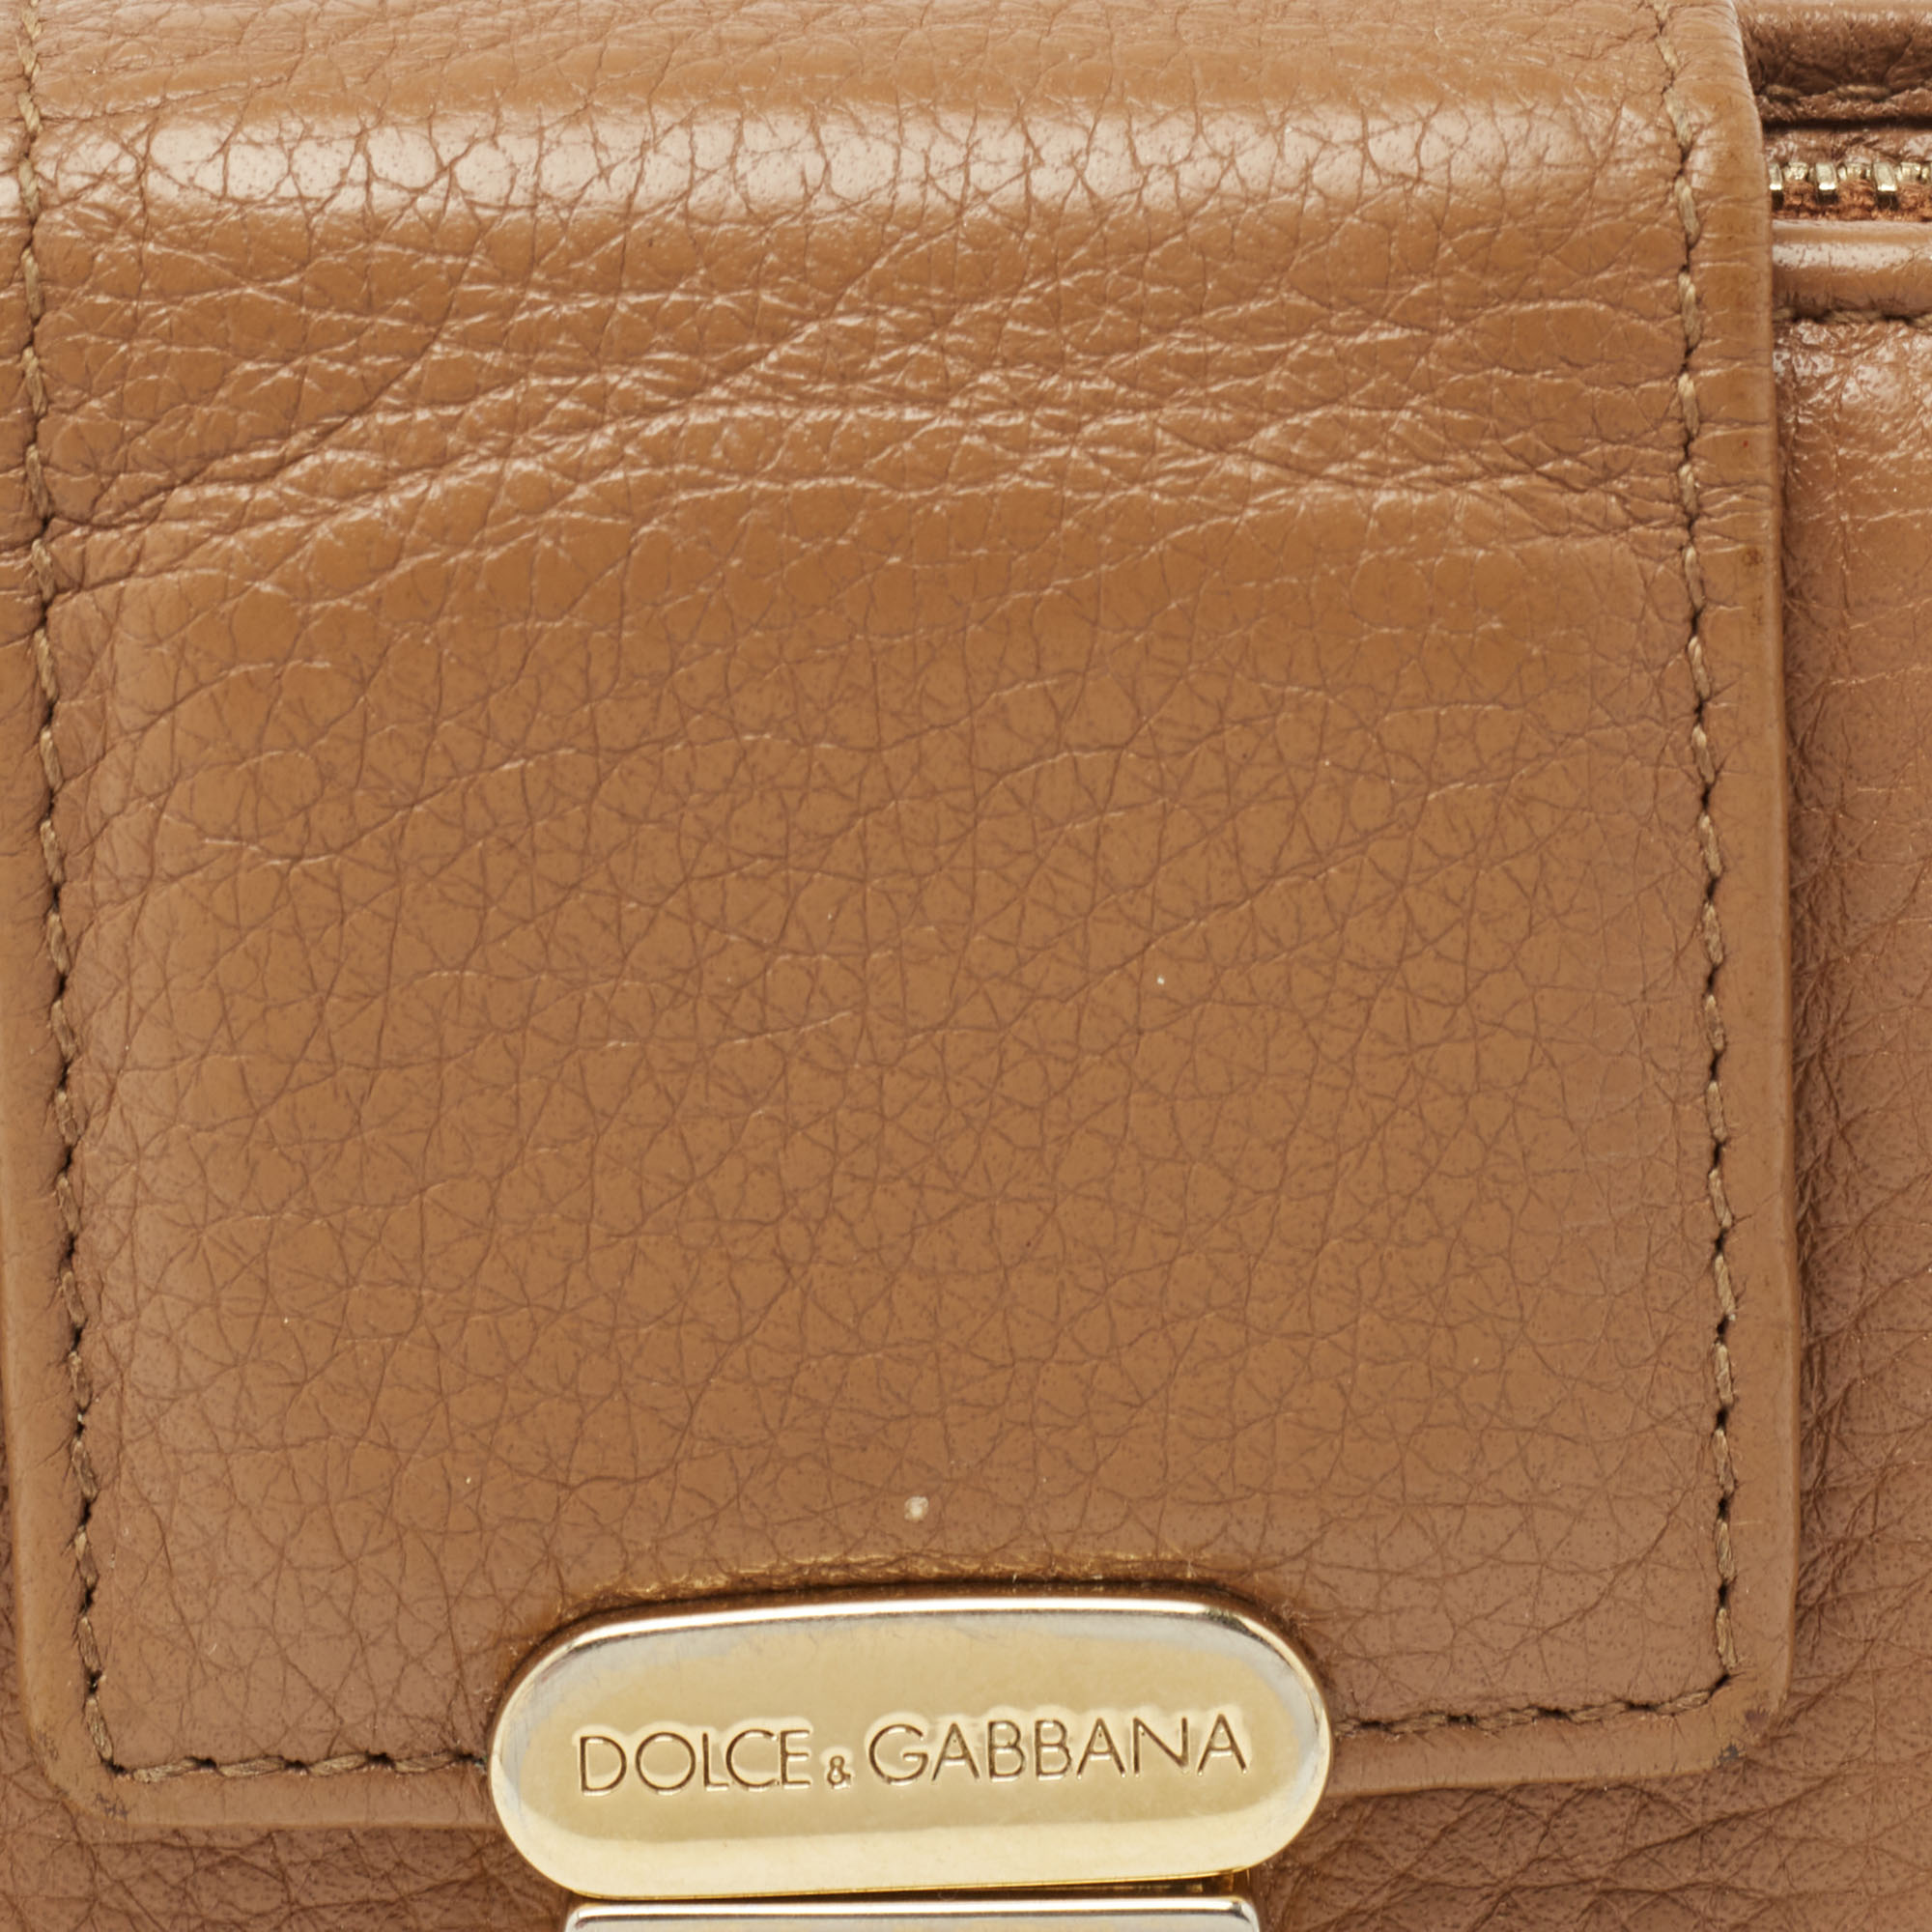 Dolce & Gabbana Beige Leather Padlock Wallet